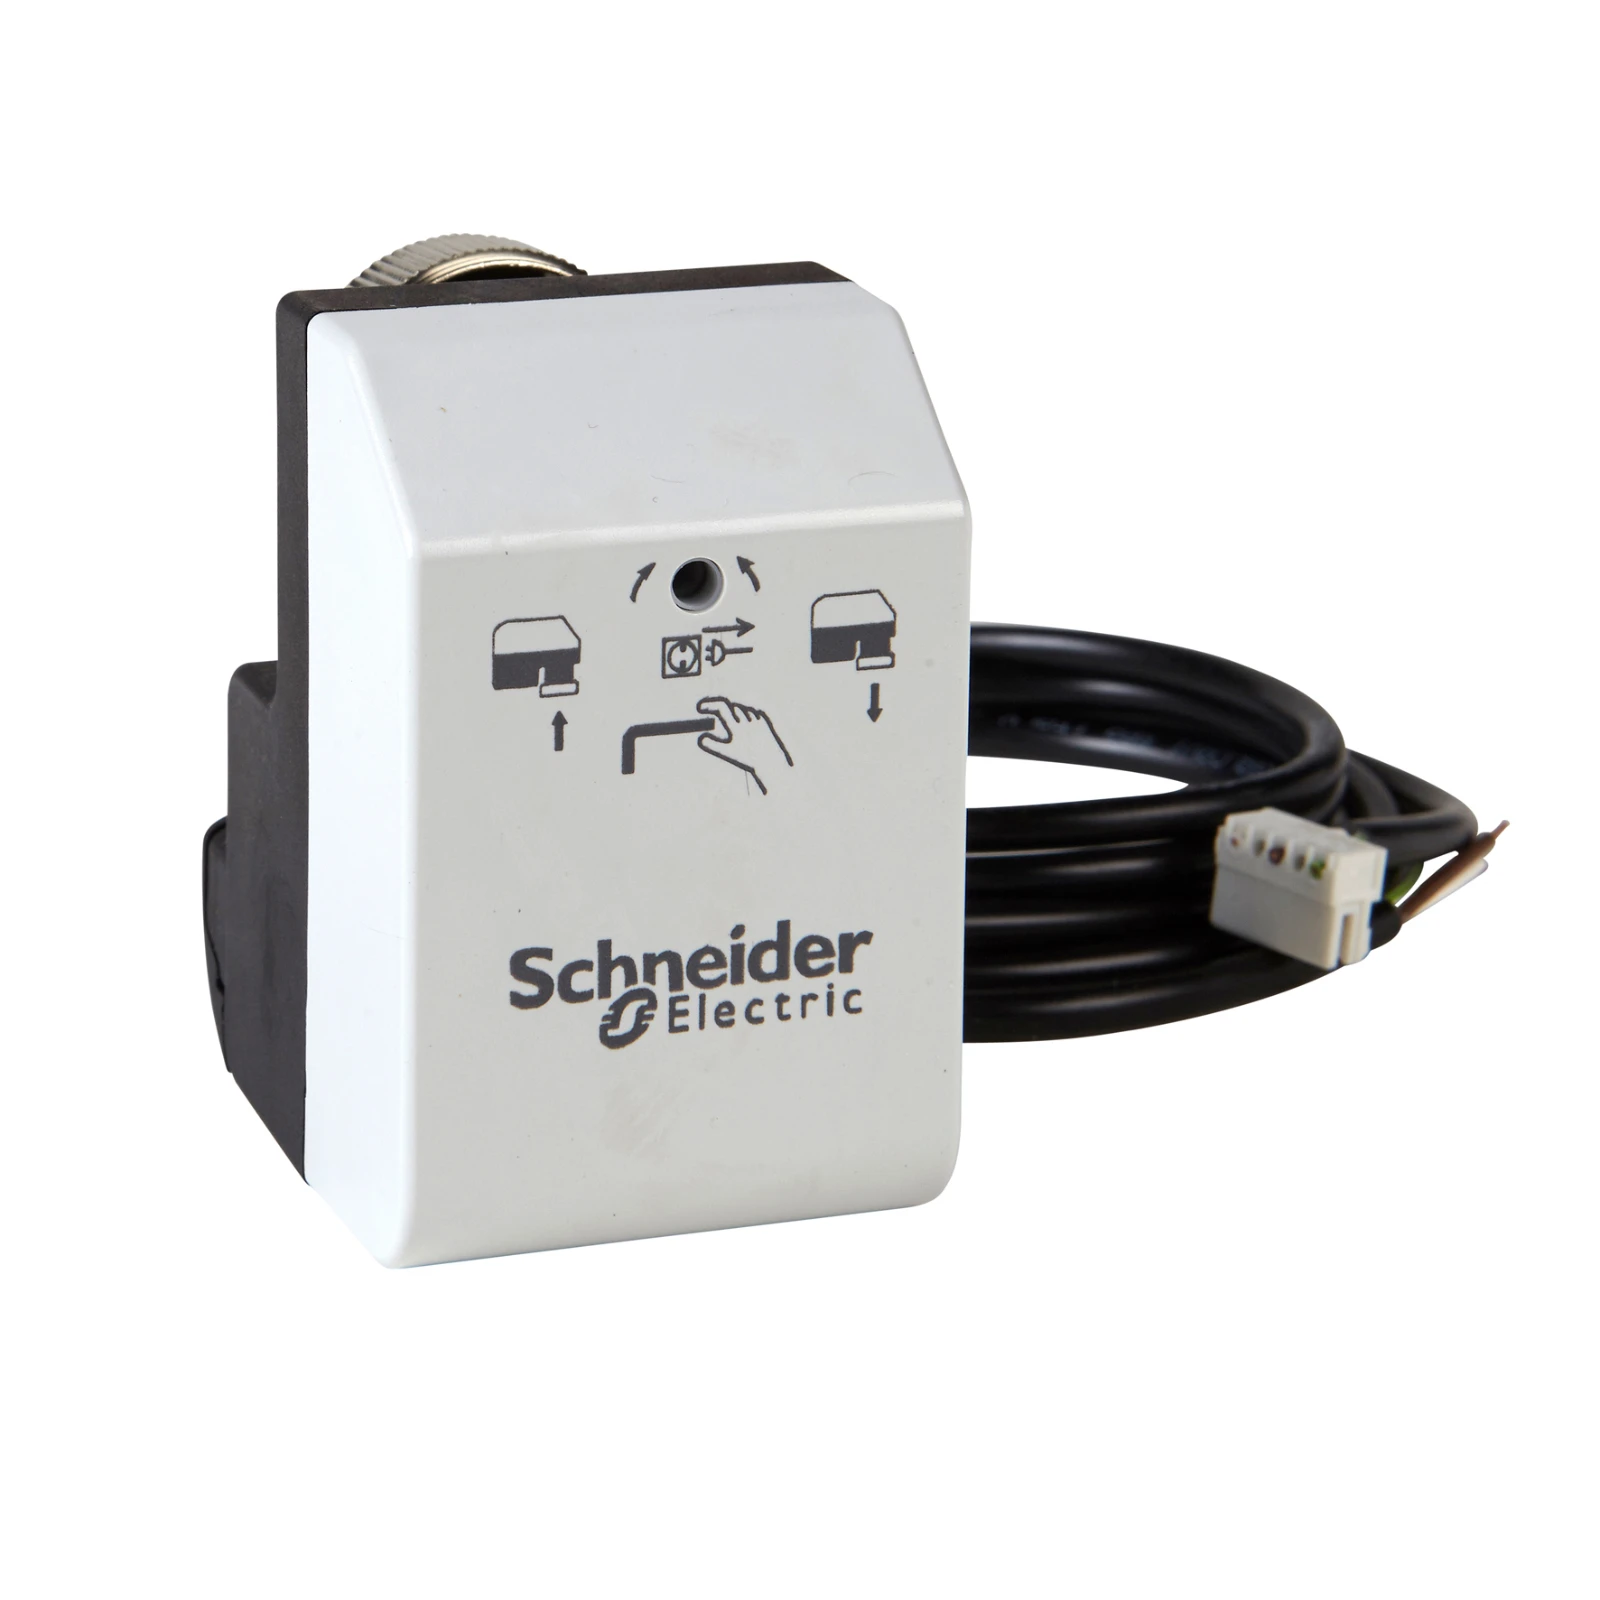 3076913 - Schneider Electric 8455001000